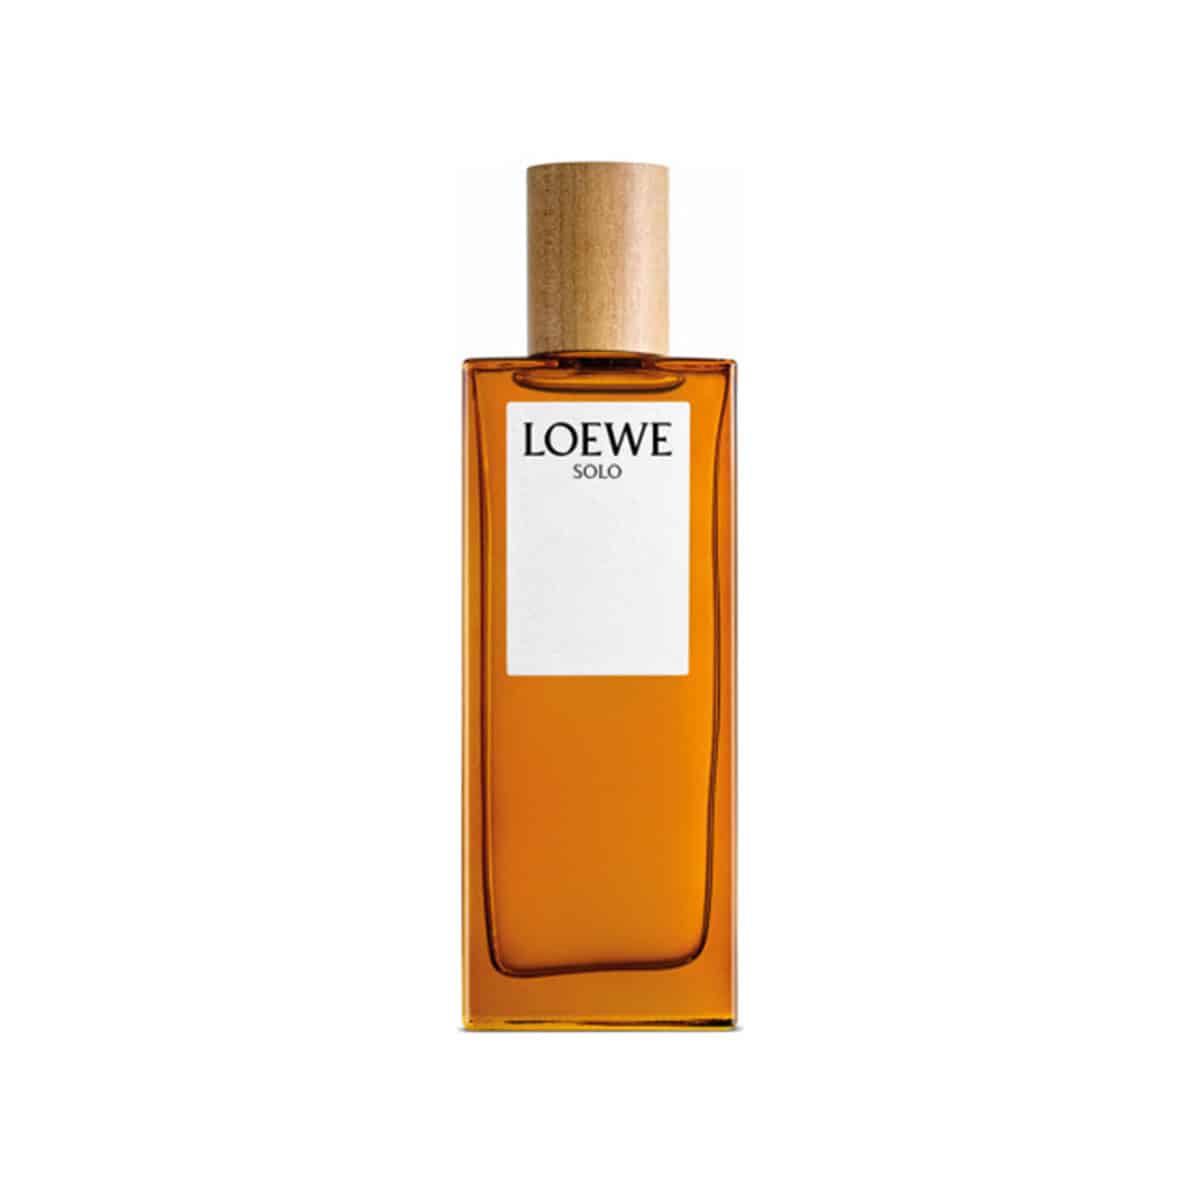 Loewe - Solo